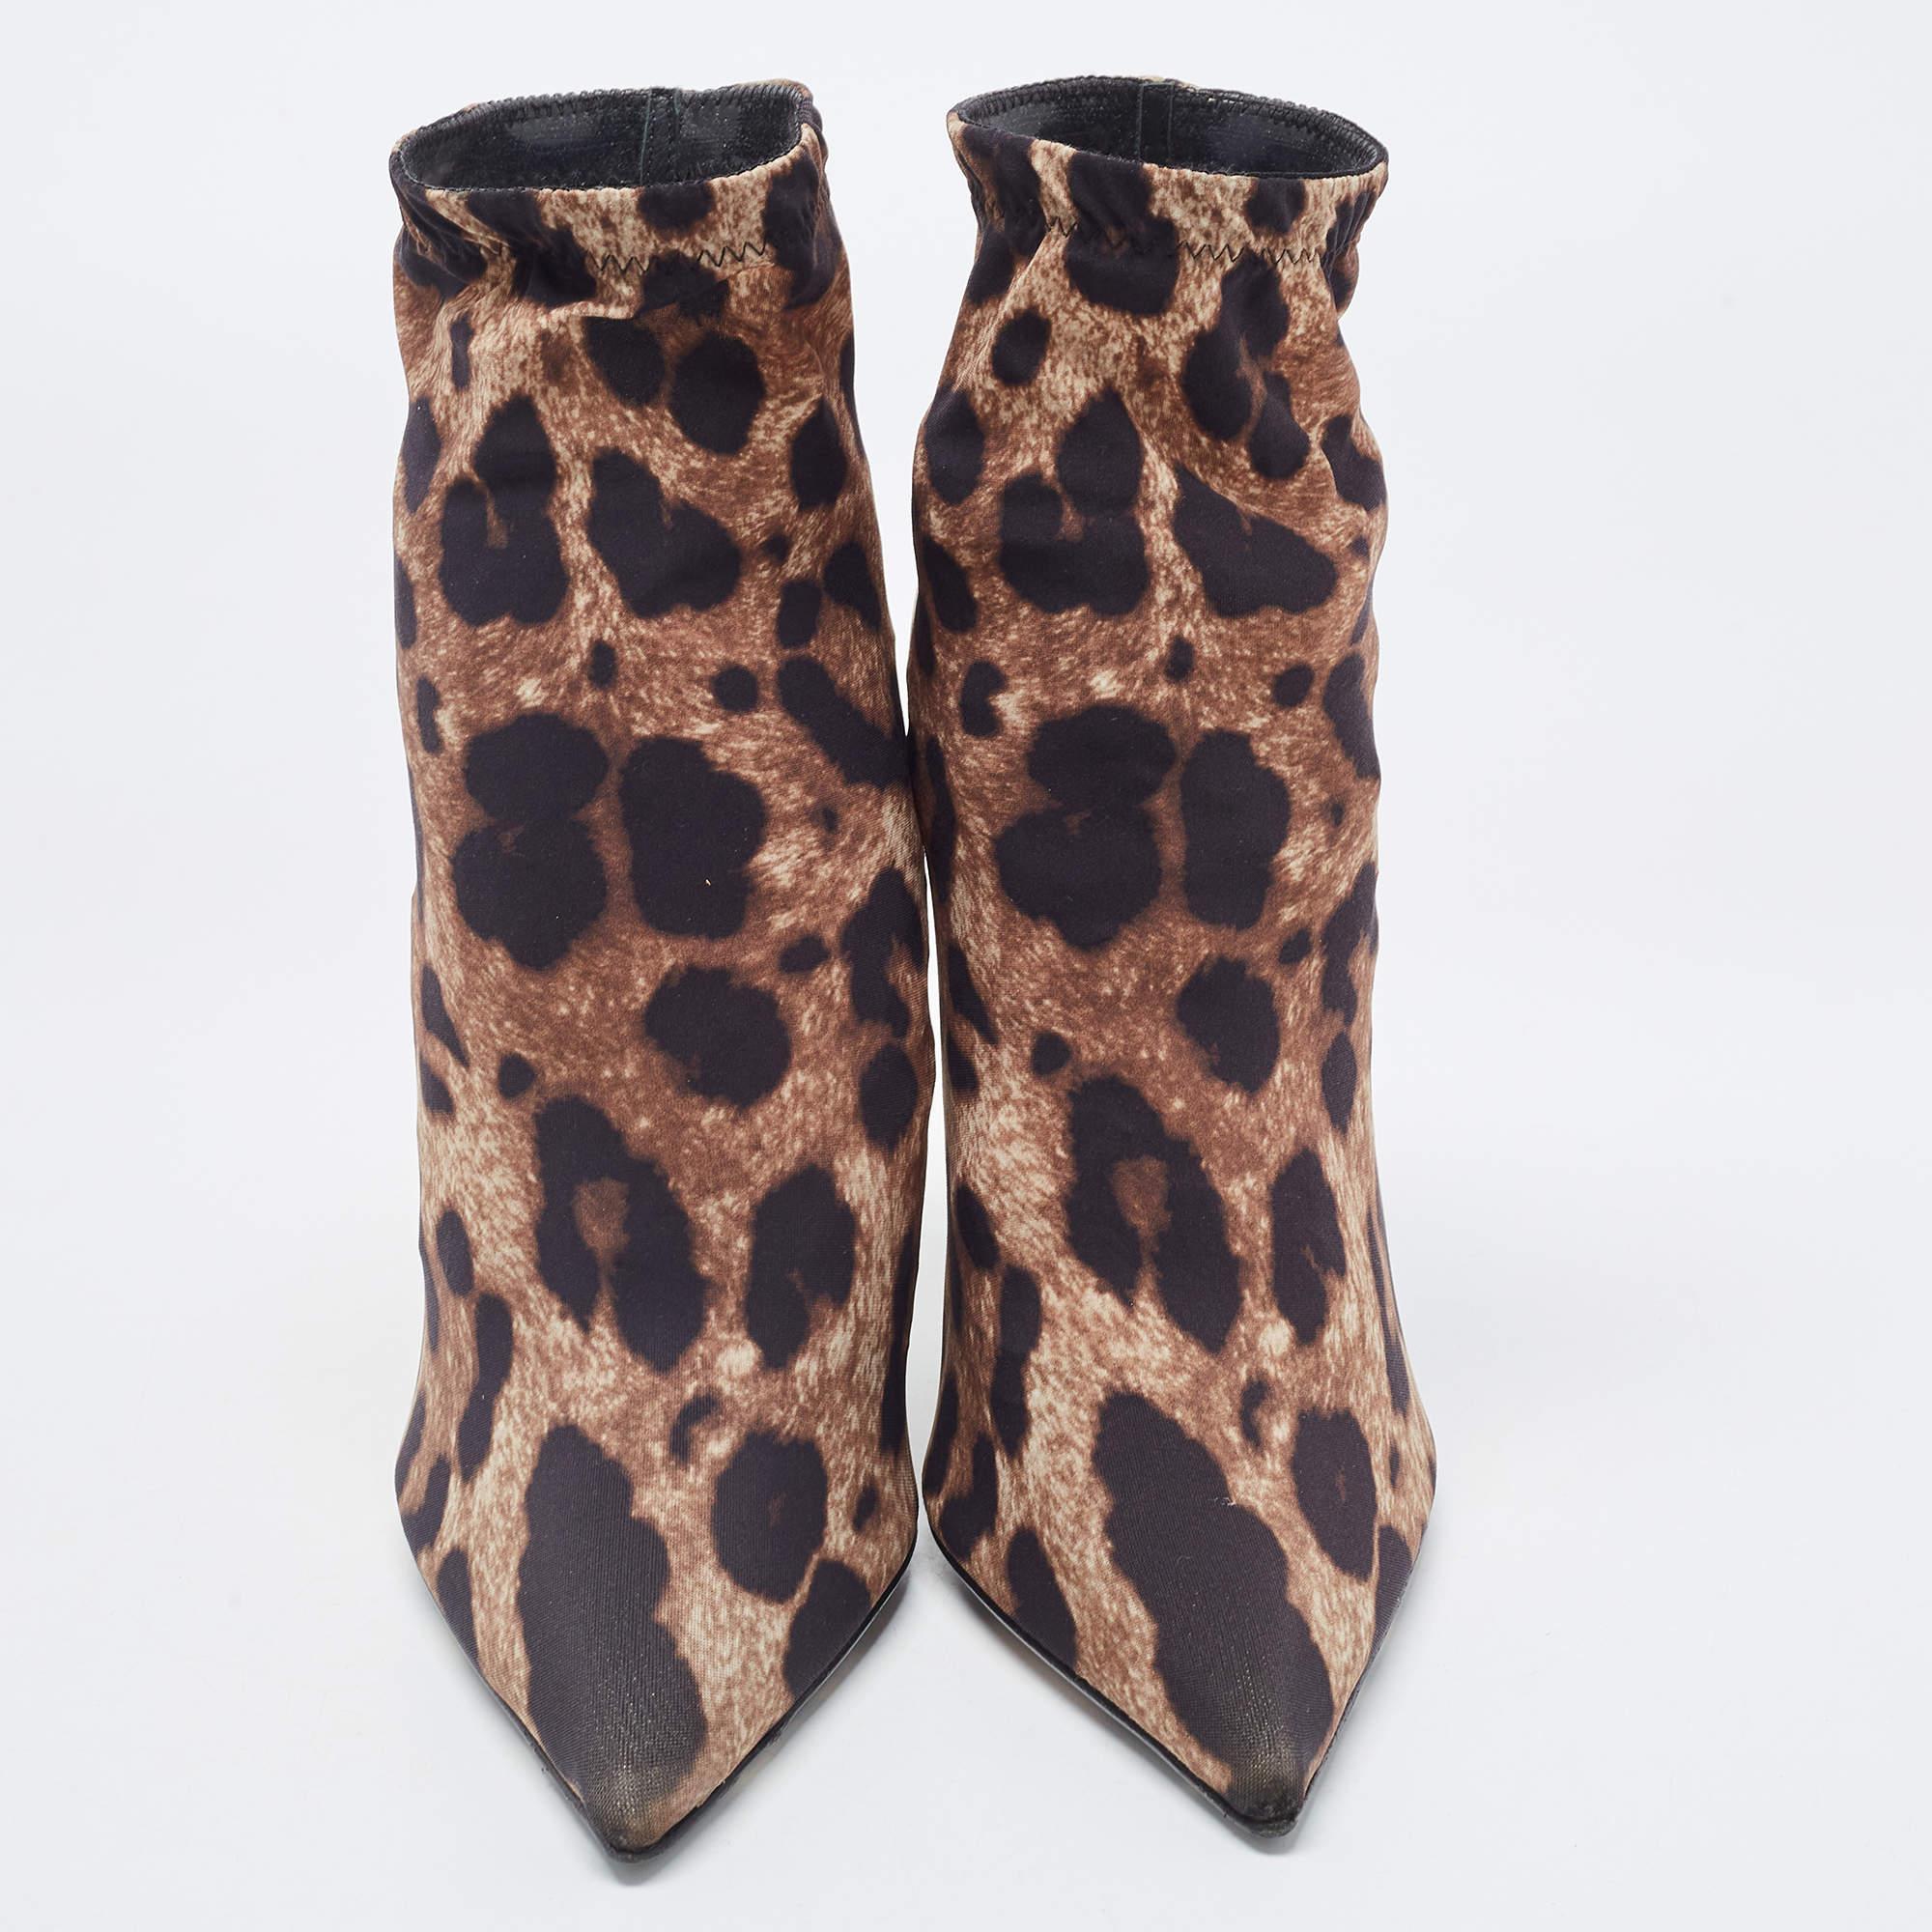 Ihr neuester Schuh ist dieser fabelhafte Ankle Bootie von Dolce & Gabbana. Die Booties mit Leopardenmuster sind aus Stretchmaterial gefertigt und haben einen 11 cm hohen Absatz.

